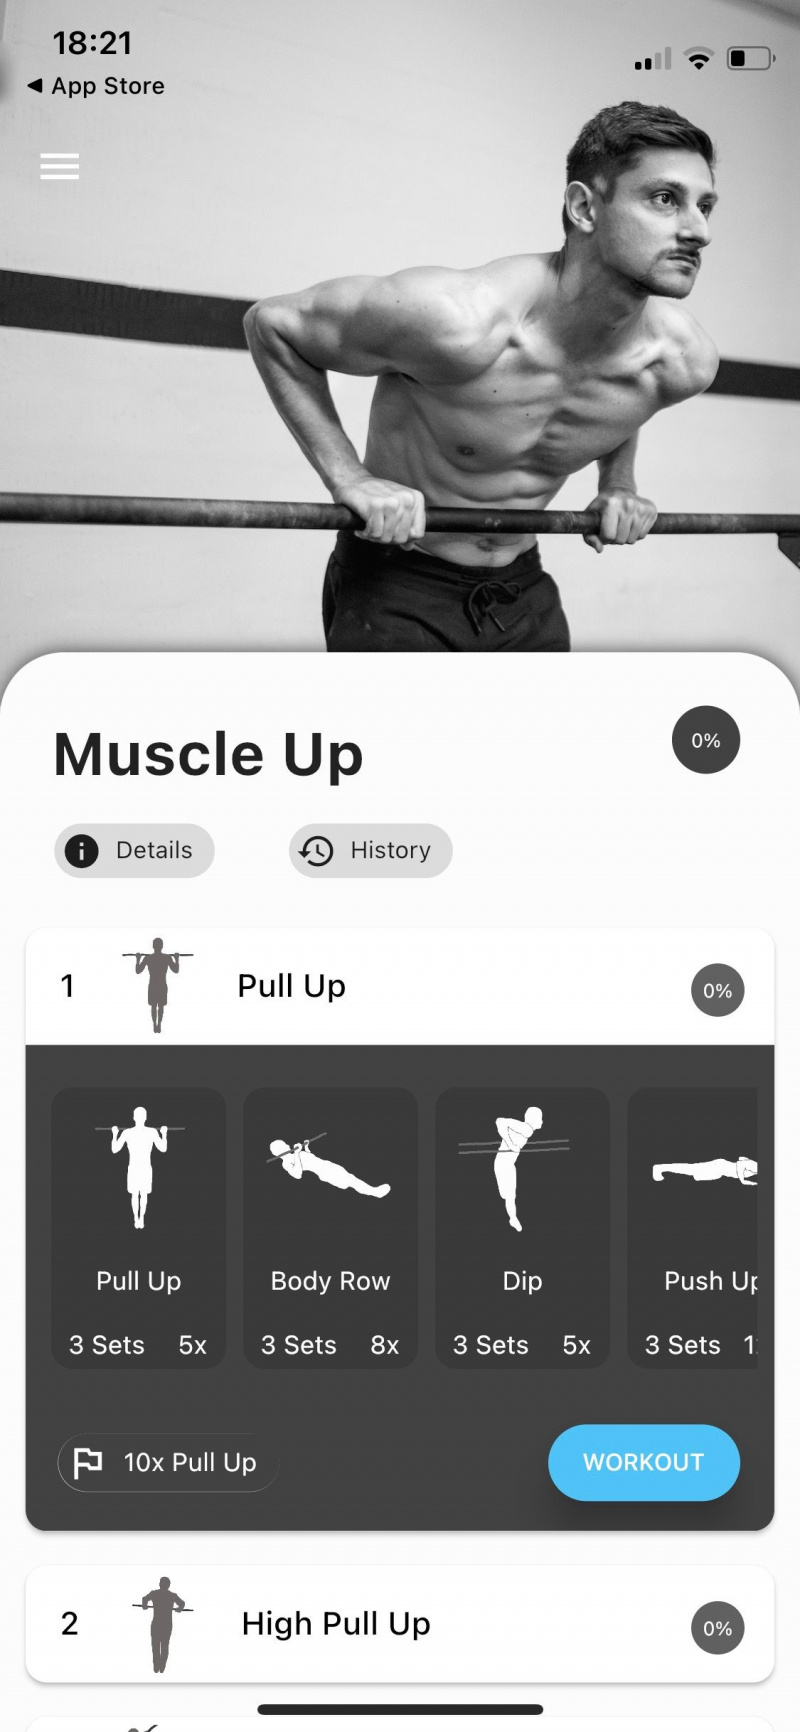   Tangkapan skrin aplikasi Thenics yang menunjukkan senaman otot